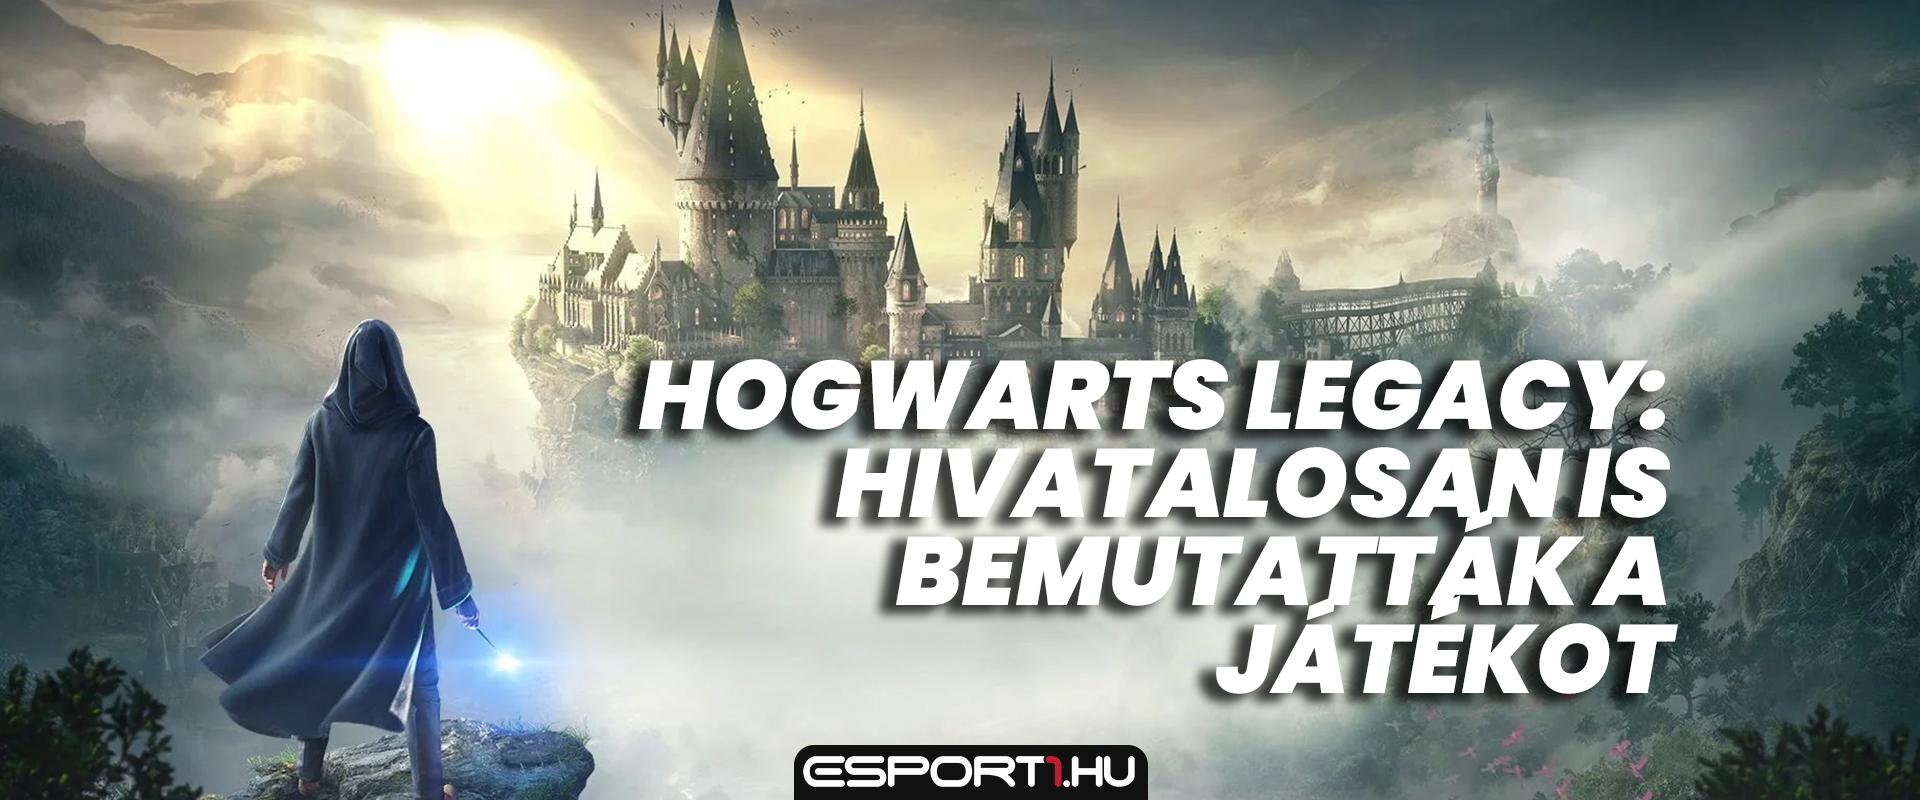 Hogwarts Legacy: 14 perces videóval jelentették be a játék megjelenését